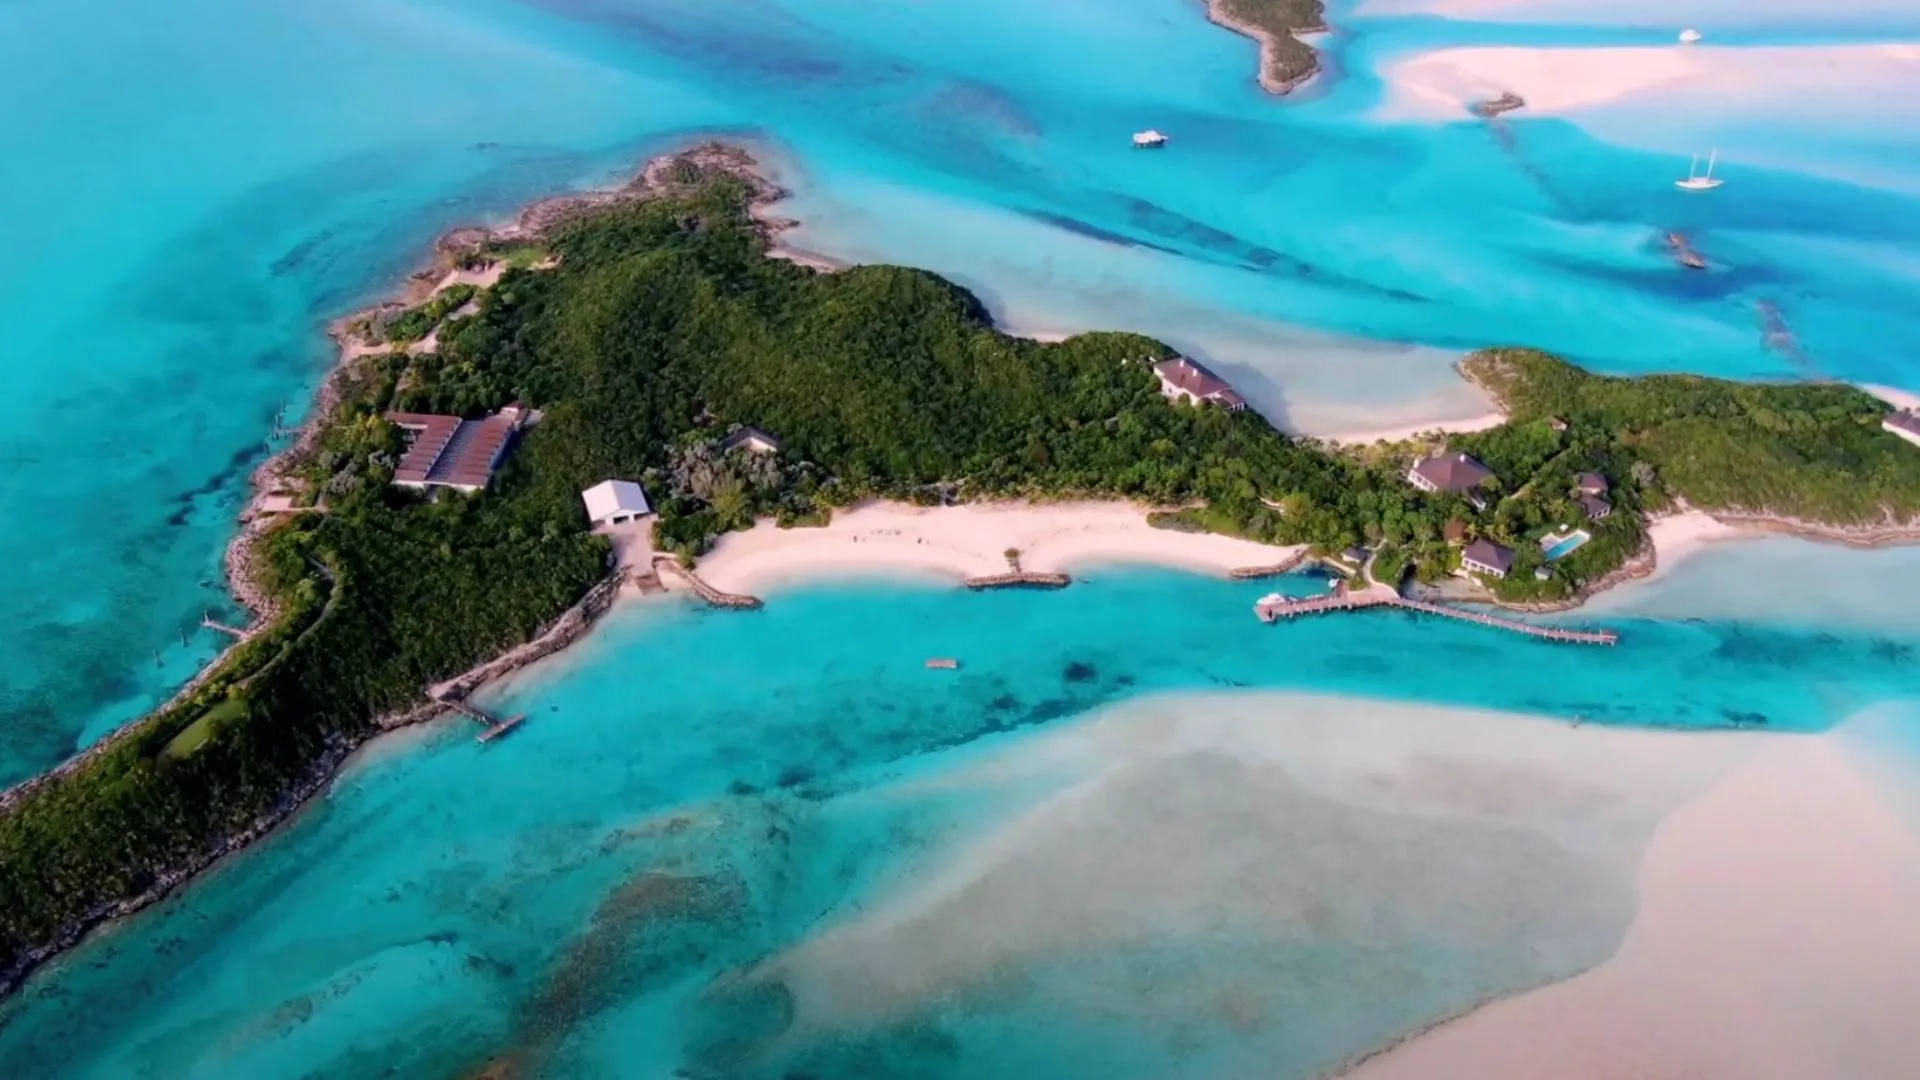 Karibikinsel steht zum Verkauf: Hier schauten schon James Bond und Captain Jack Sparrow vorbei